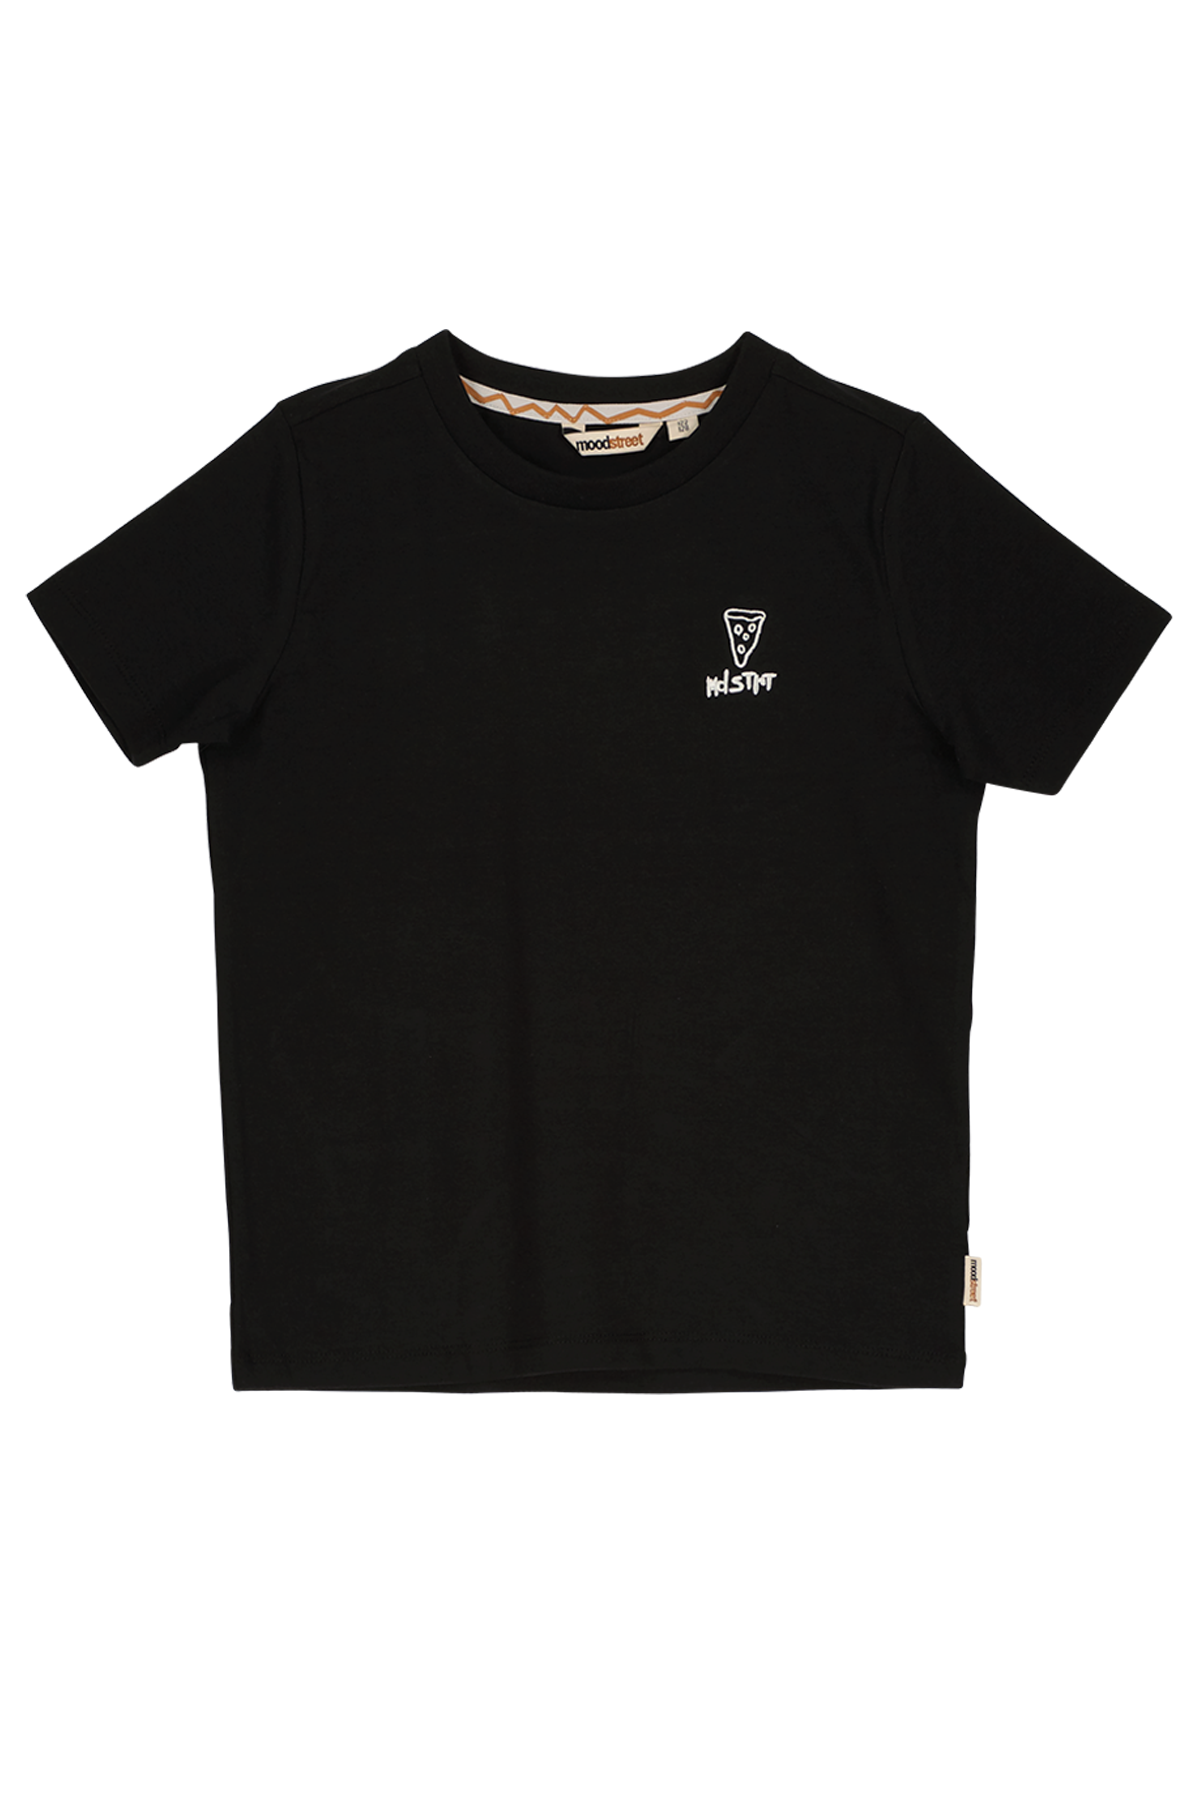 T-Shirt Boys t-shirt black